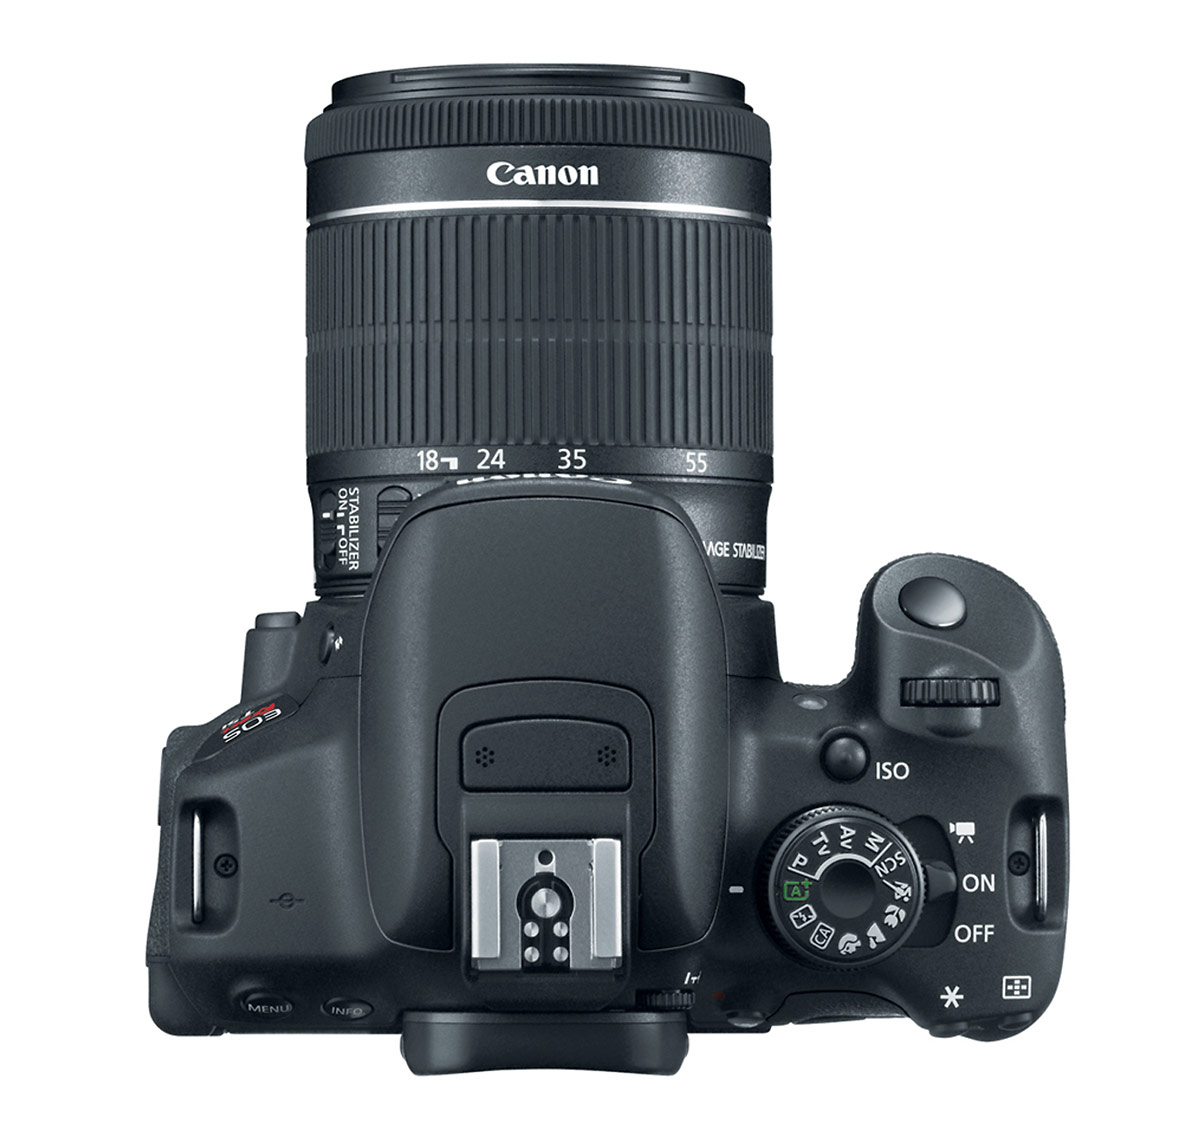 Canon EOS Rebel T5i / EOS 700D - Top View & Controls